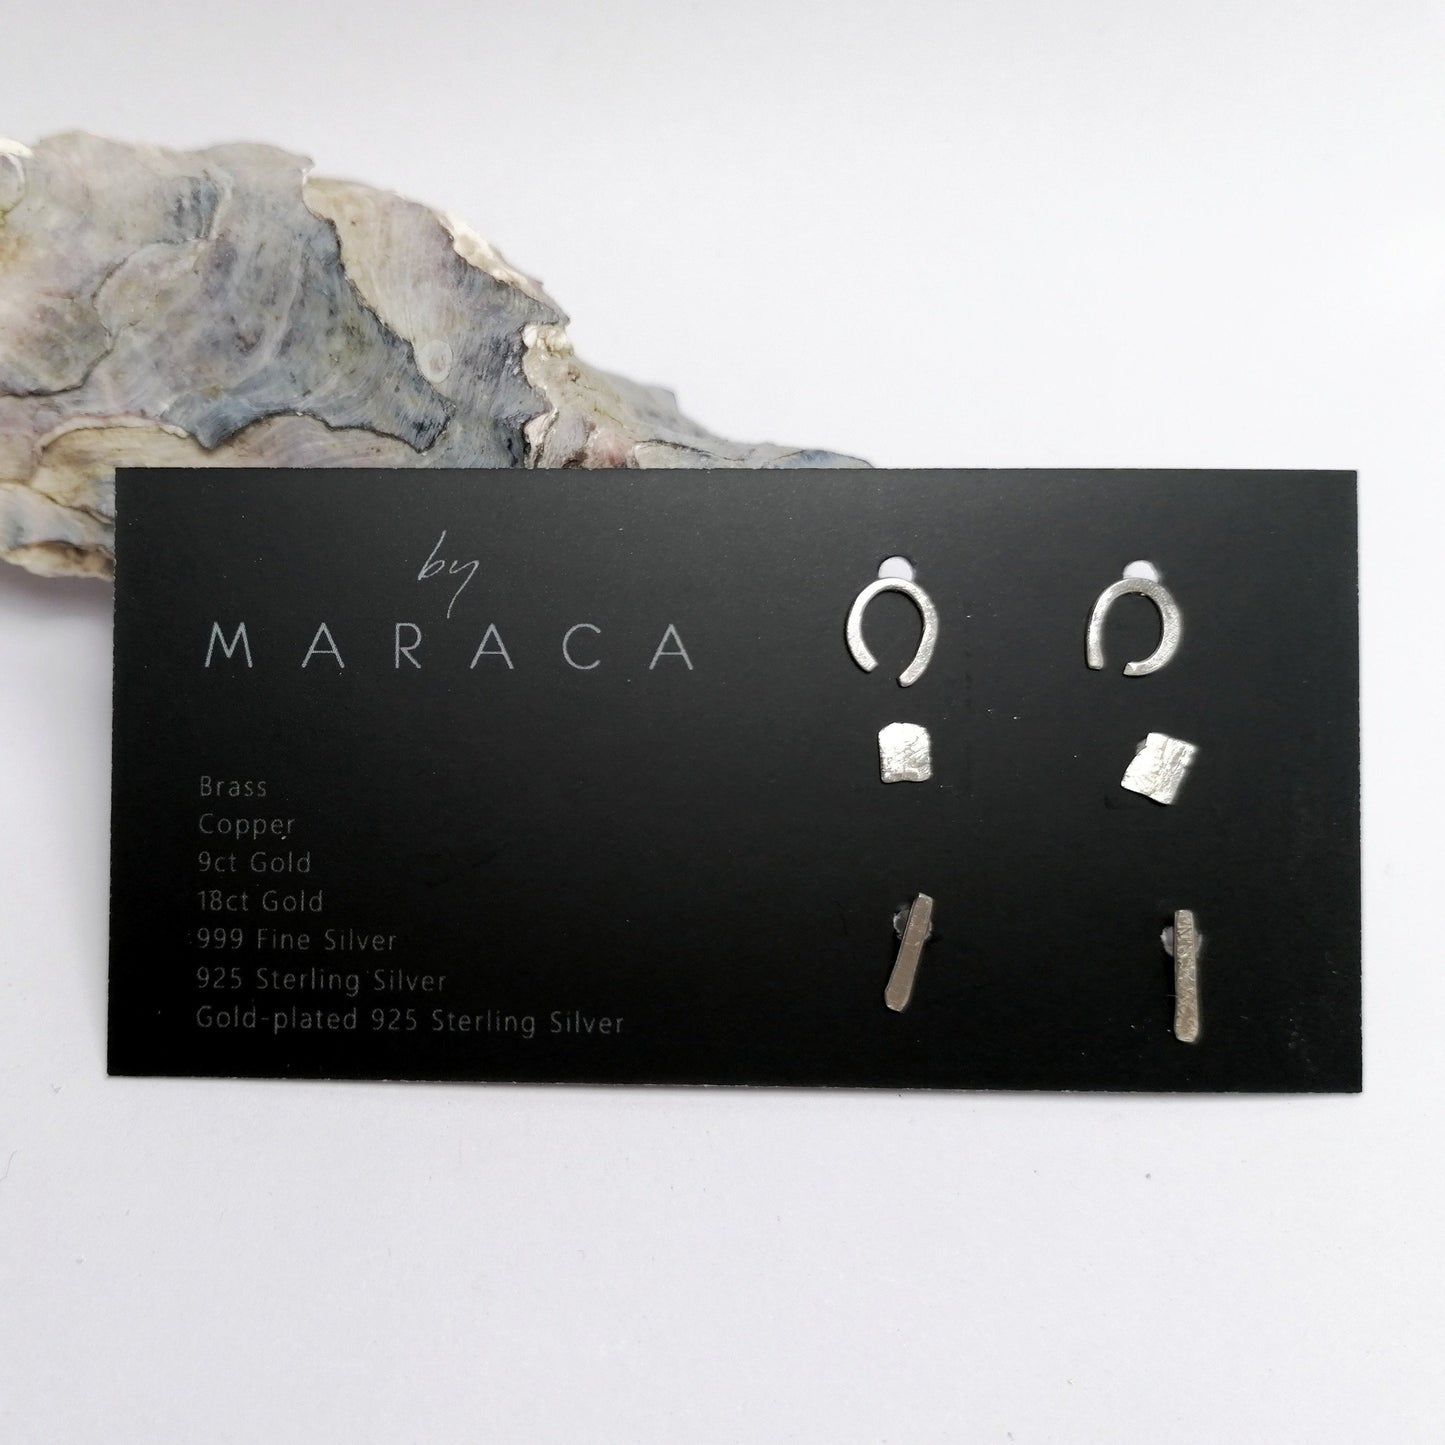 By Maraca Earrings BASE - Stud Set in Silver